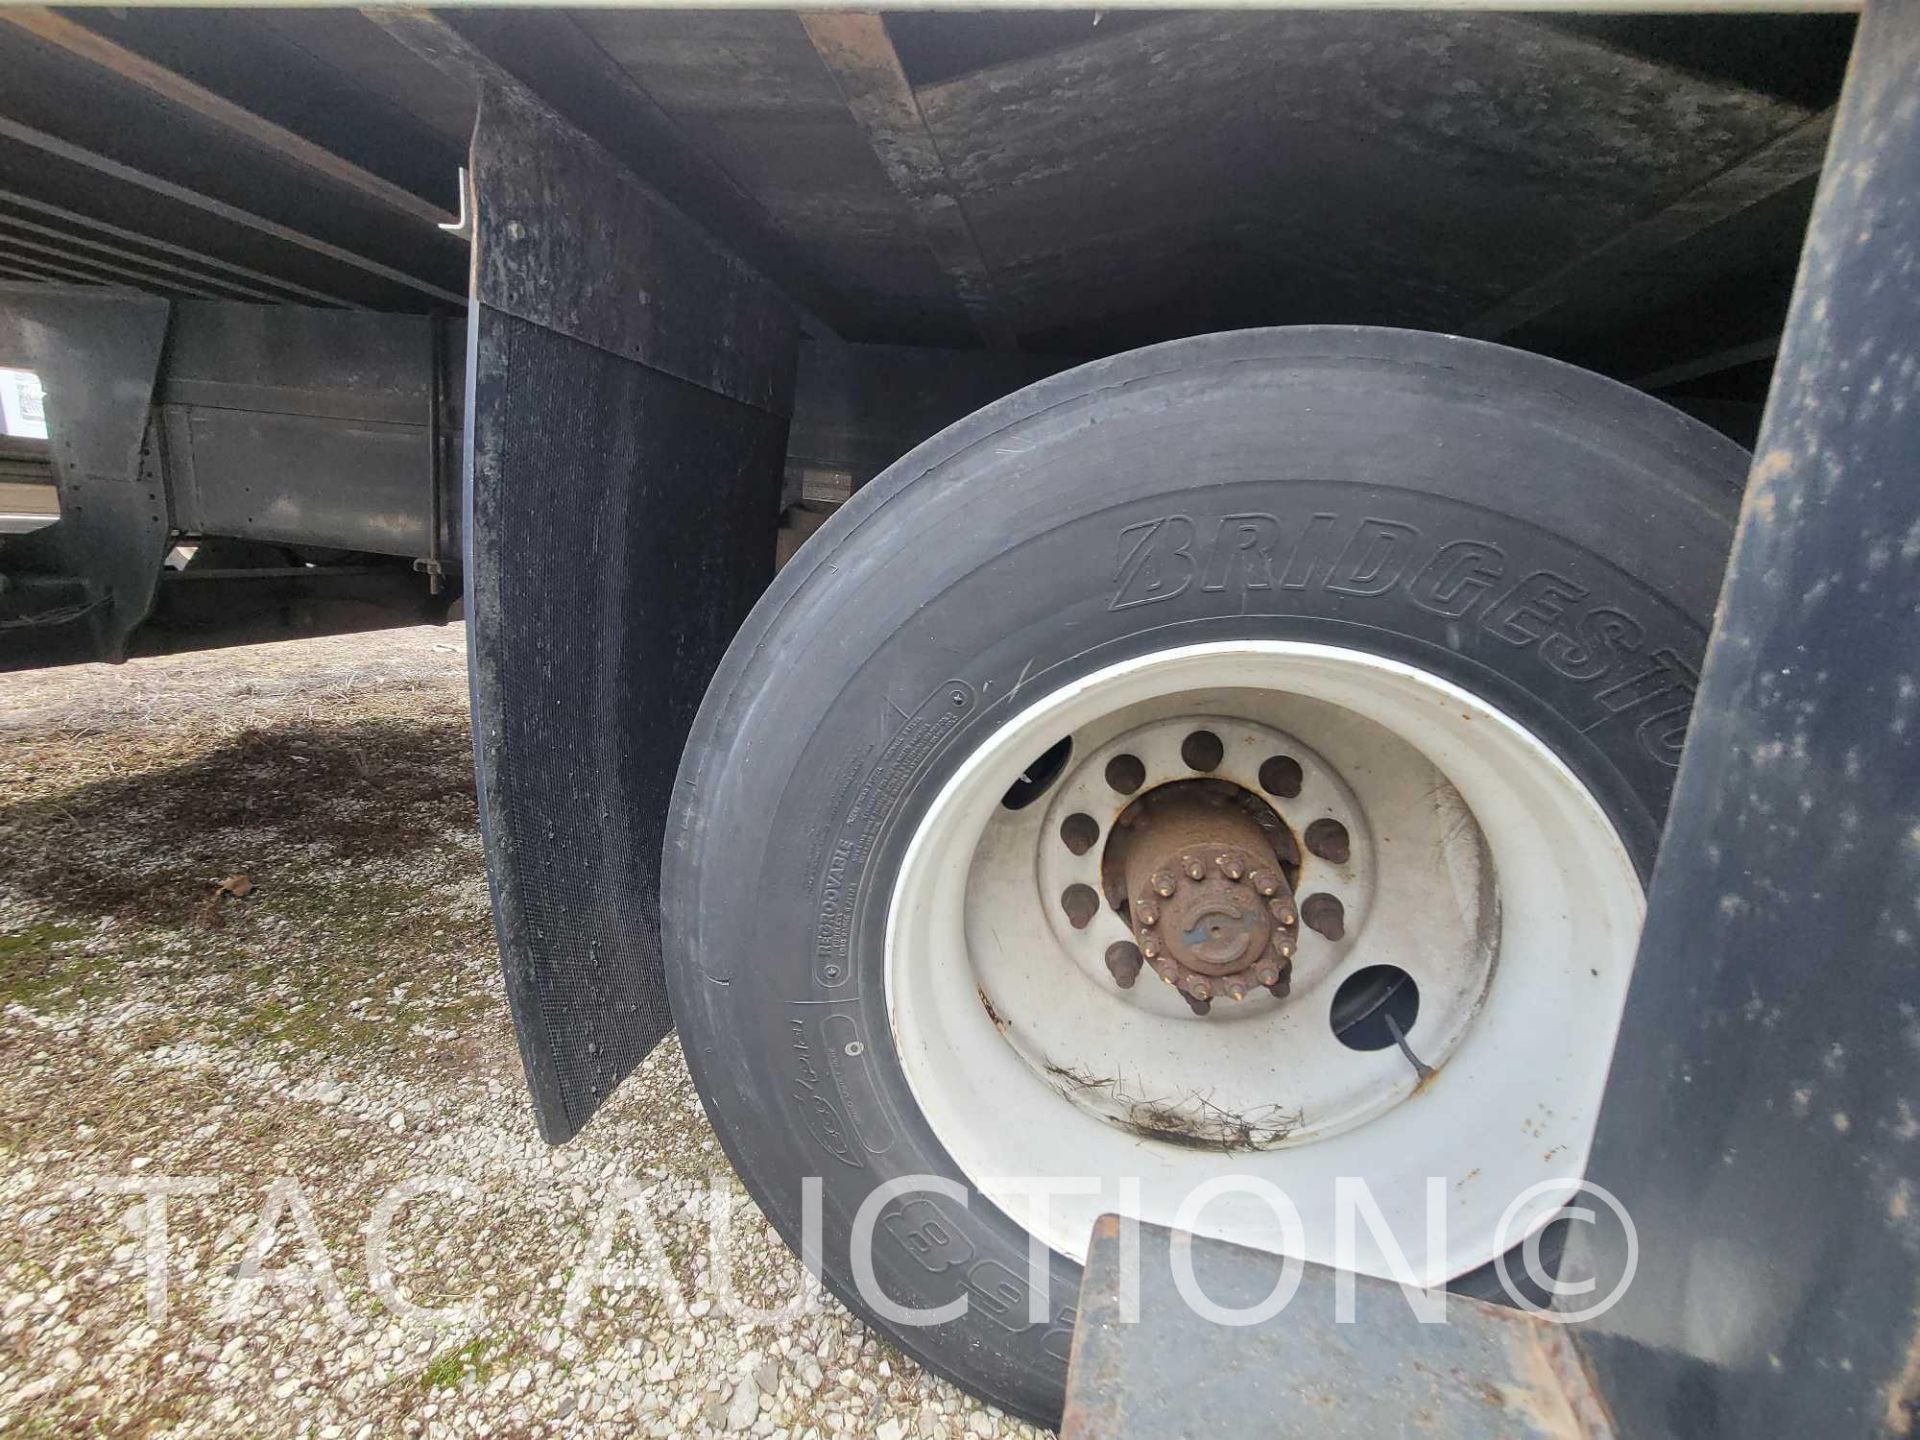 2017 Hino 268 26ft Box Truck - Image 31 of 40